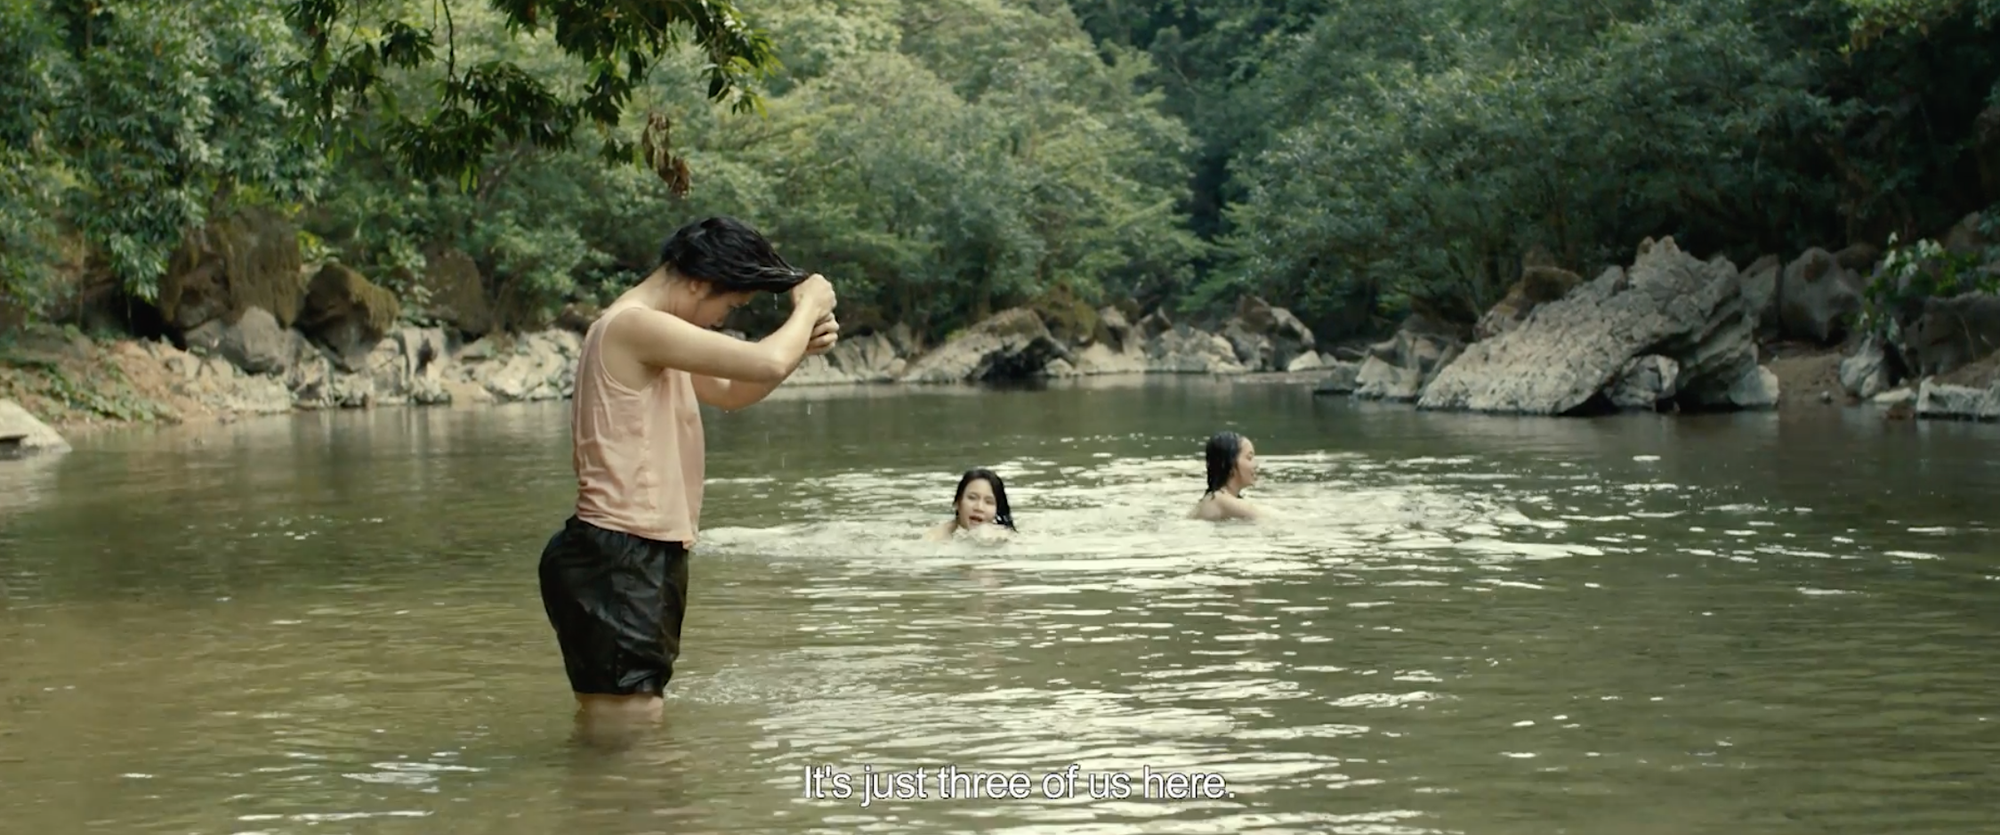 Phim Việt "đốt mắt" khán giả với cảnh nhìn trộm gái xinh tắm suối - 3